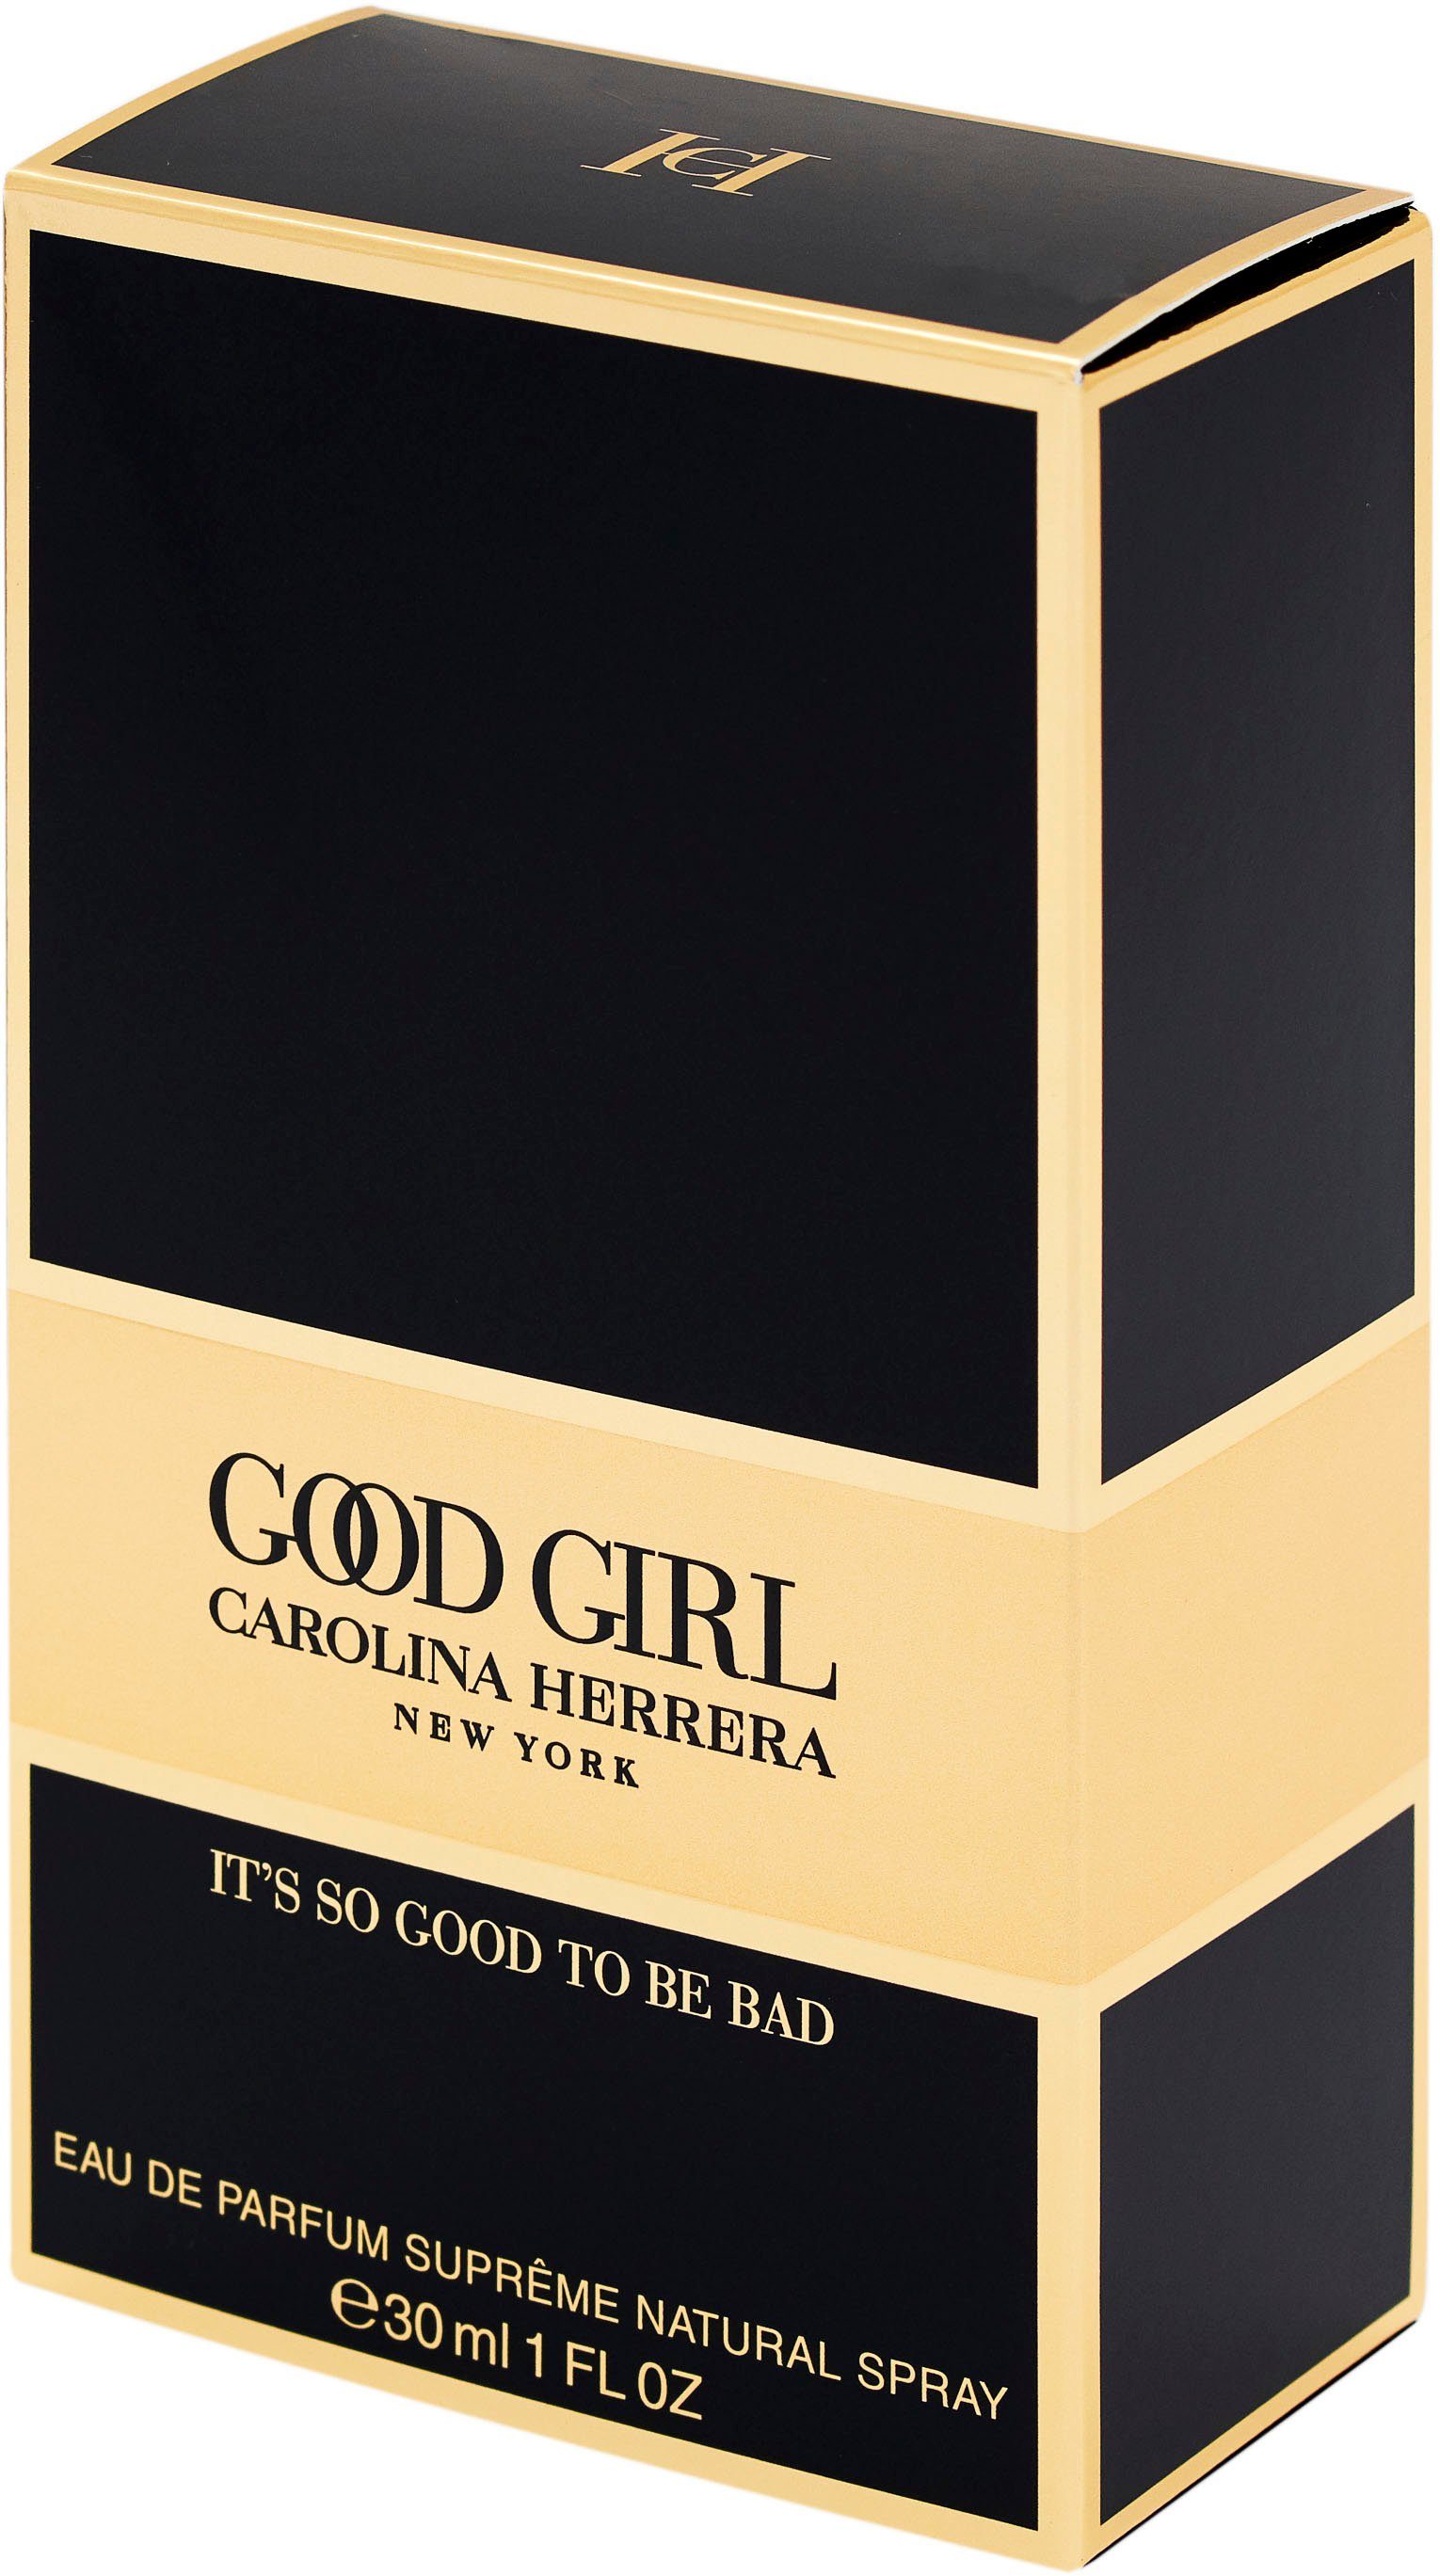 Girl Eau Parfum de Supreme Carolina Herrera Good